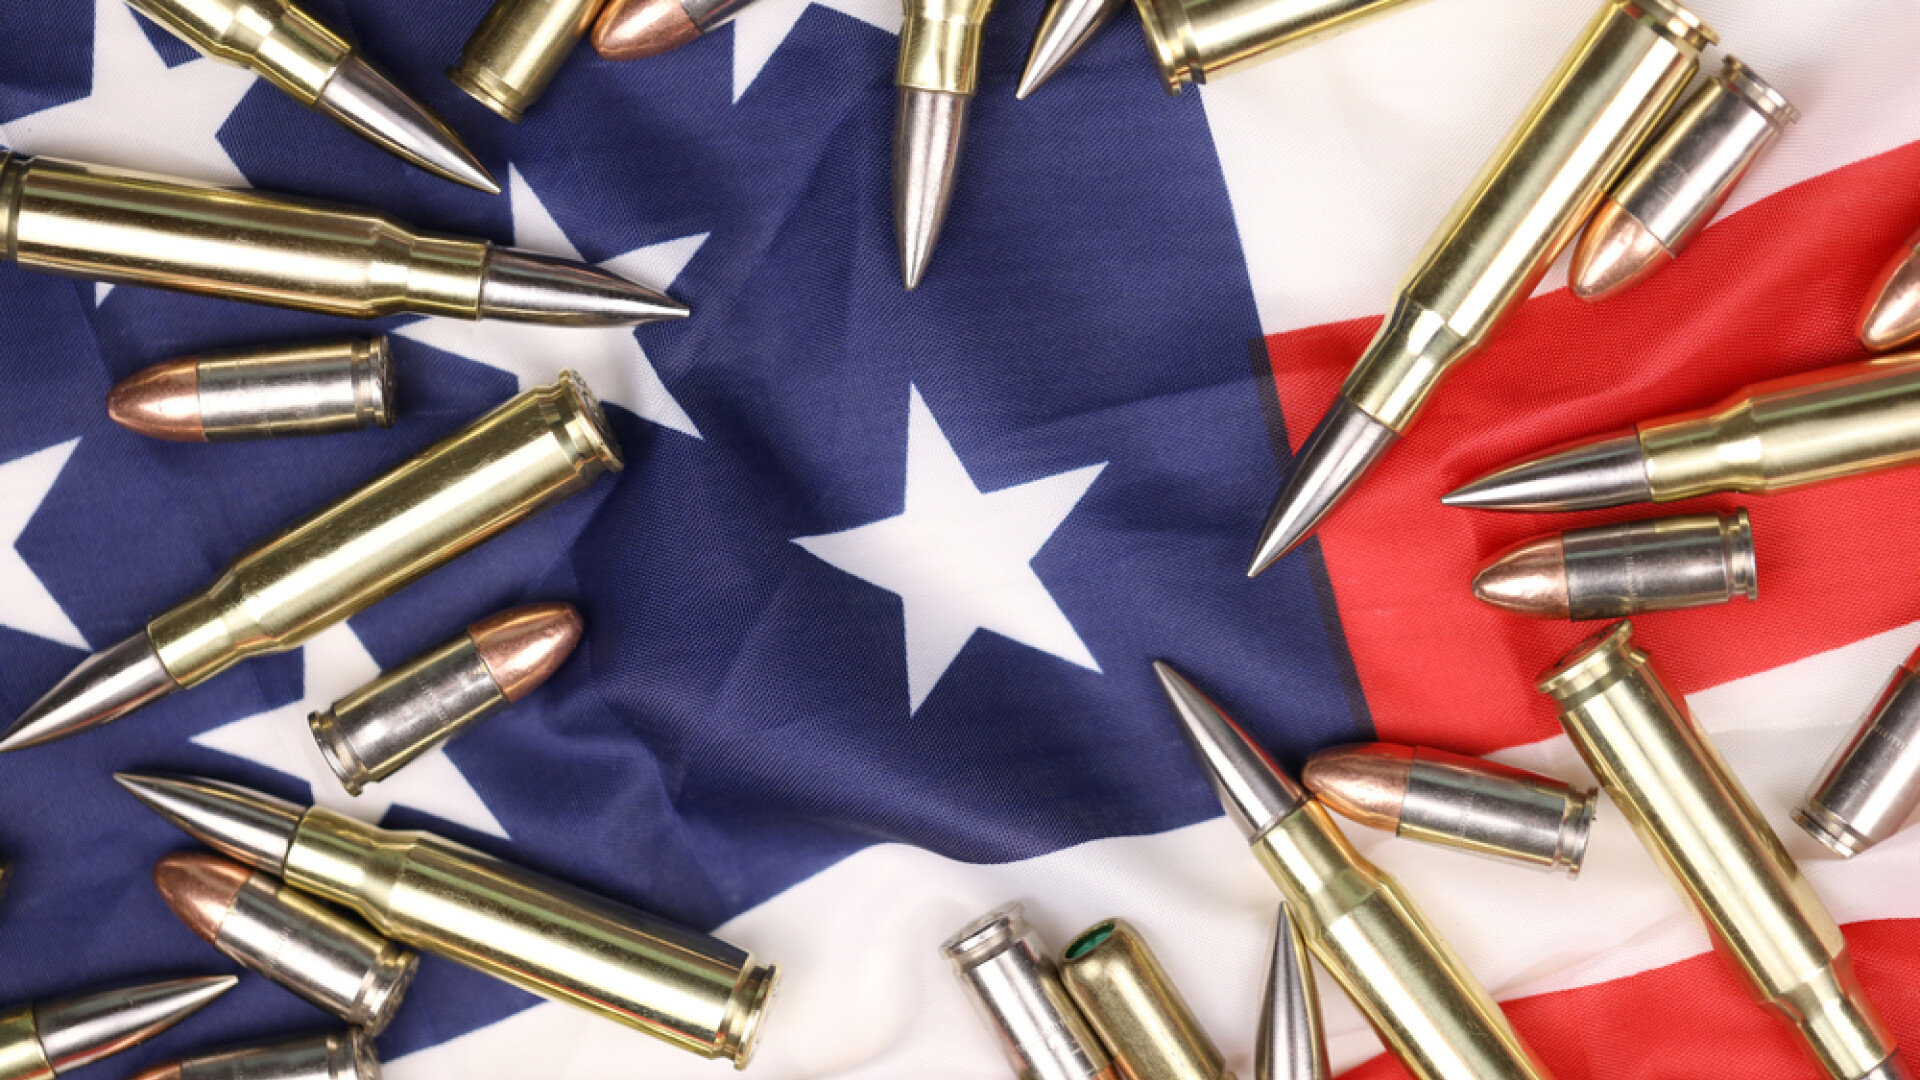 Vot în Congresul SUA pentru interzicerea armelor de asalt. Legea pare însă sortită eșecului în Senat